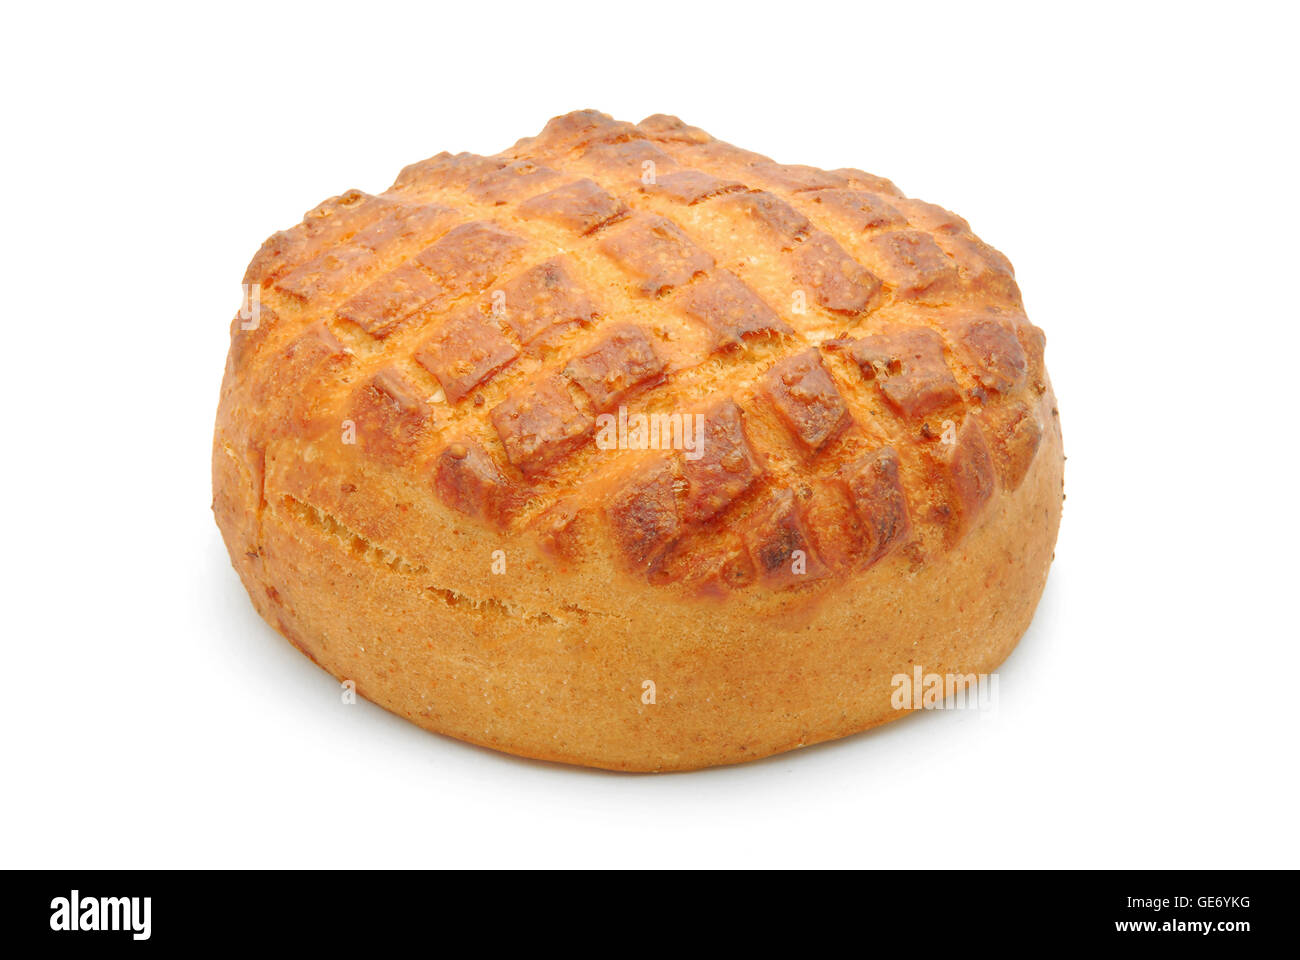 cheese bread bun Stock Photo